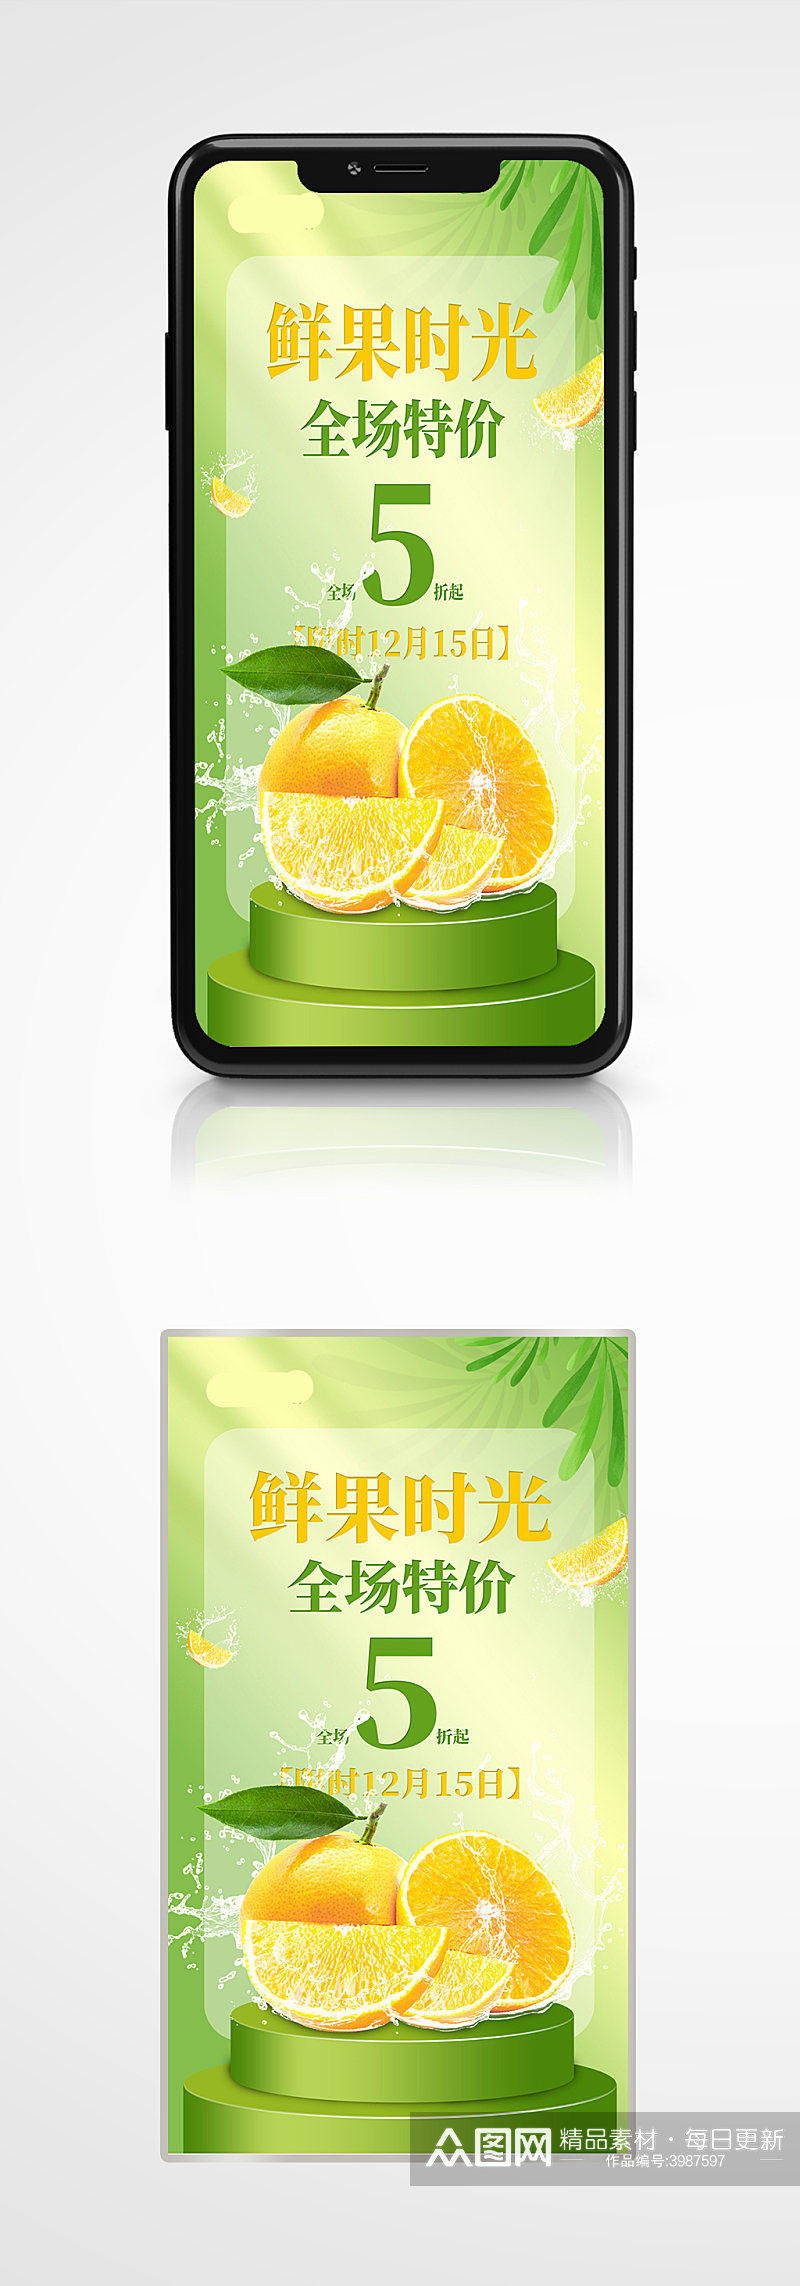 橙子冬季水果活动促销手机海报清新绿色素材